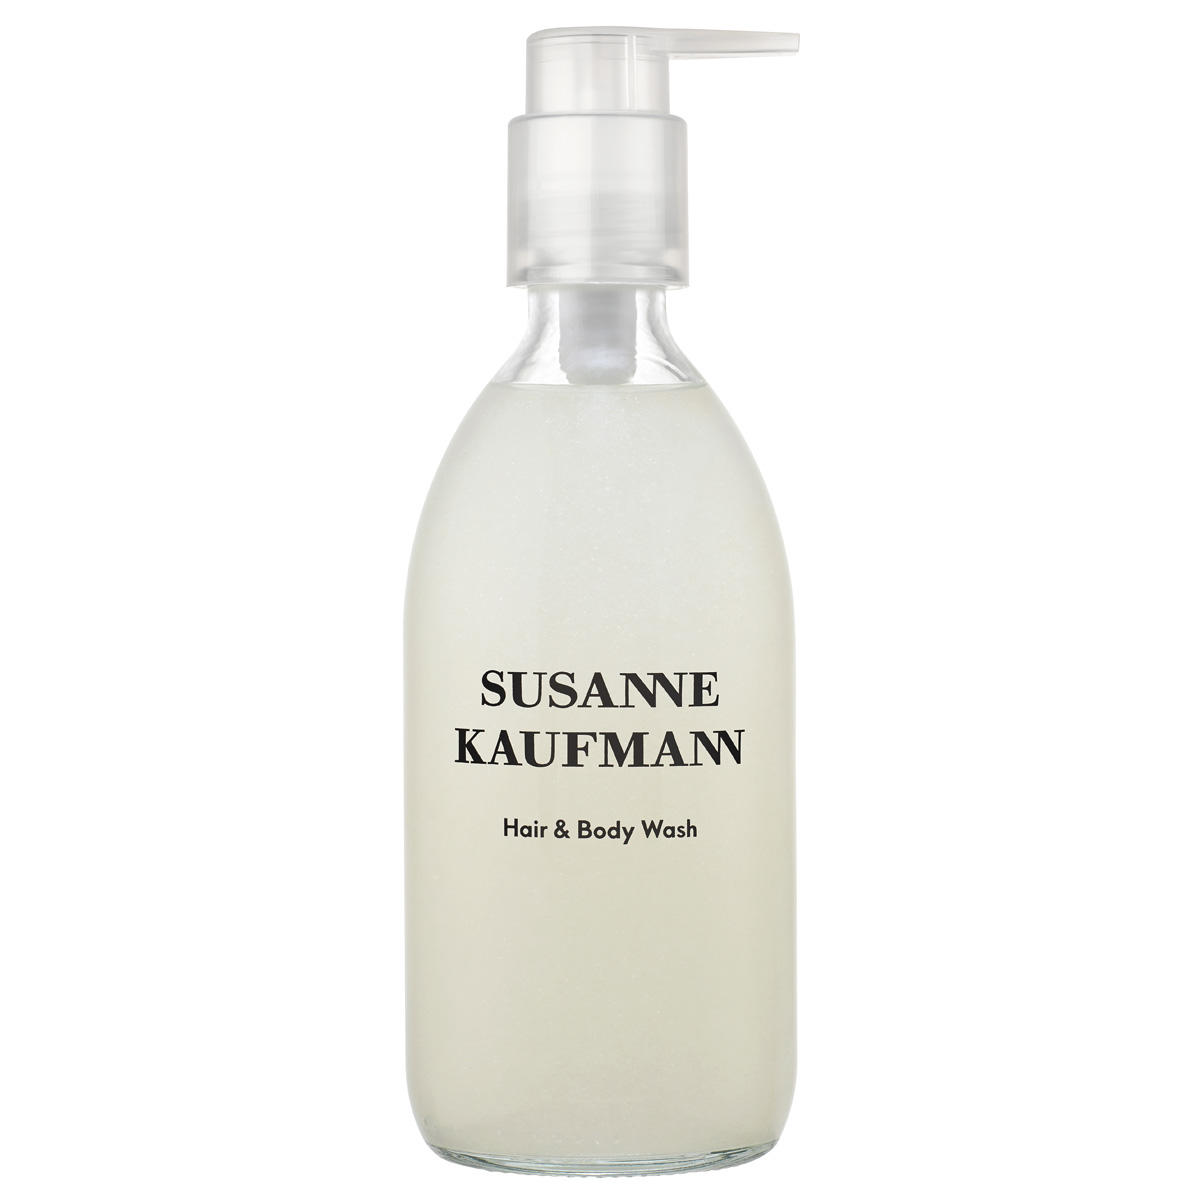 Susanne Kaufmann Douche/Shampoo - Hair  Body Wash 250 ml - 1